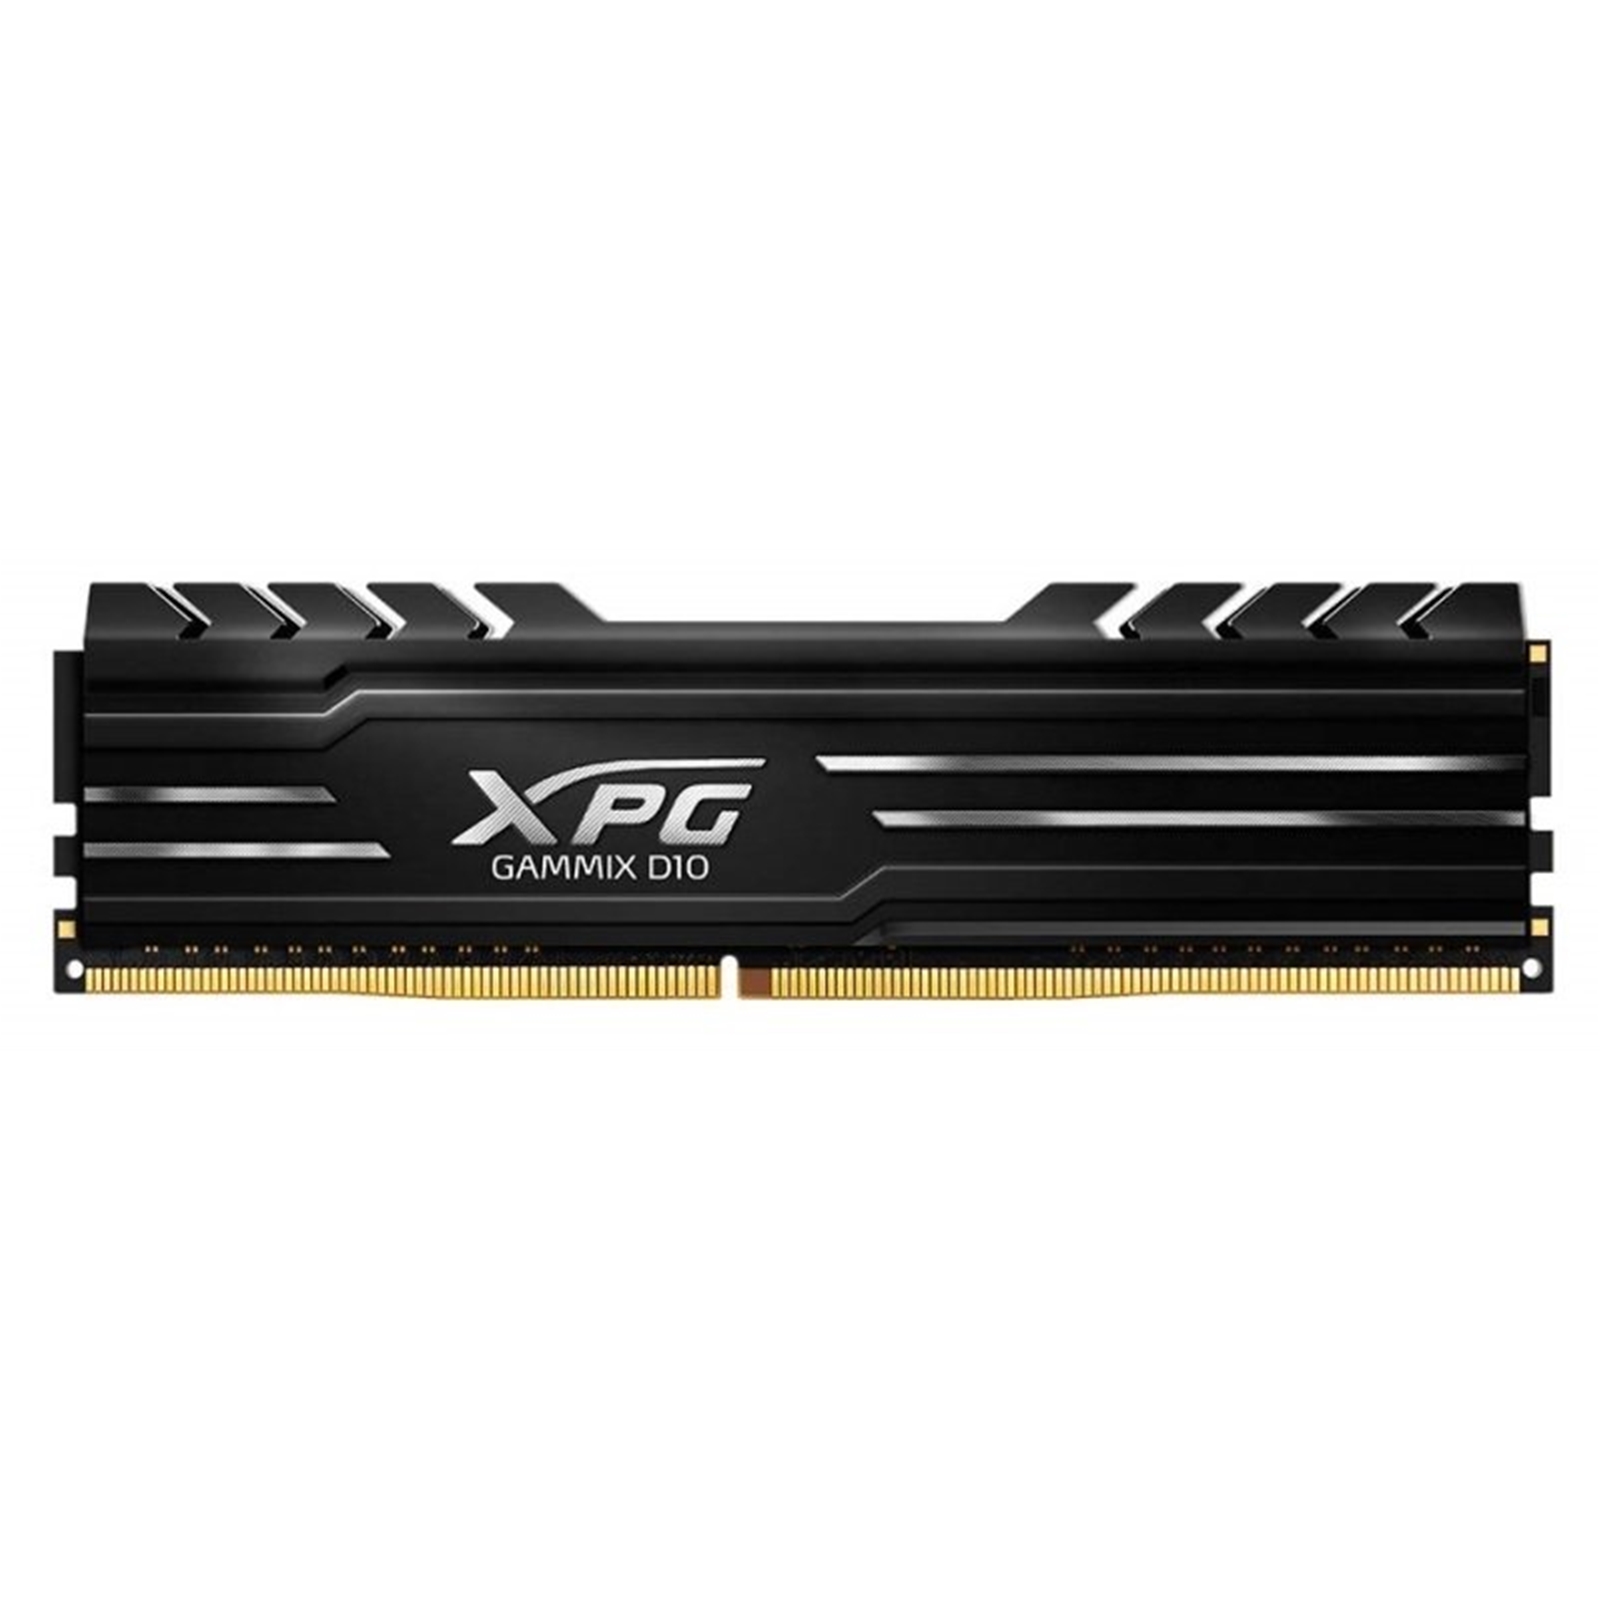 Adata XPG GAMMIX D10 AX4U320016G16A-SB10 16GB DIMM System Memory, Black, DDR4, 3200MHz, 1 x 16GB